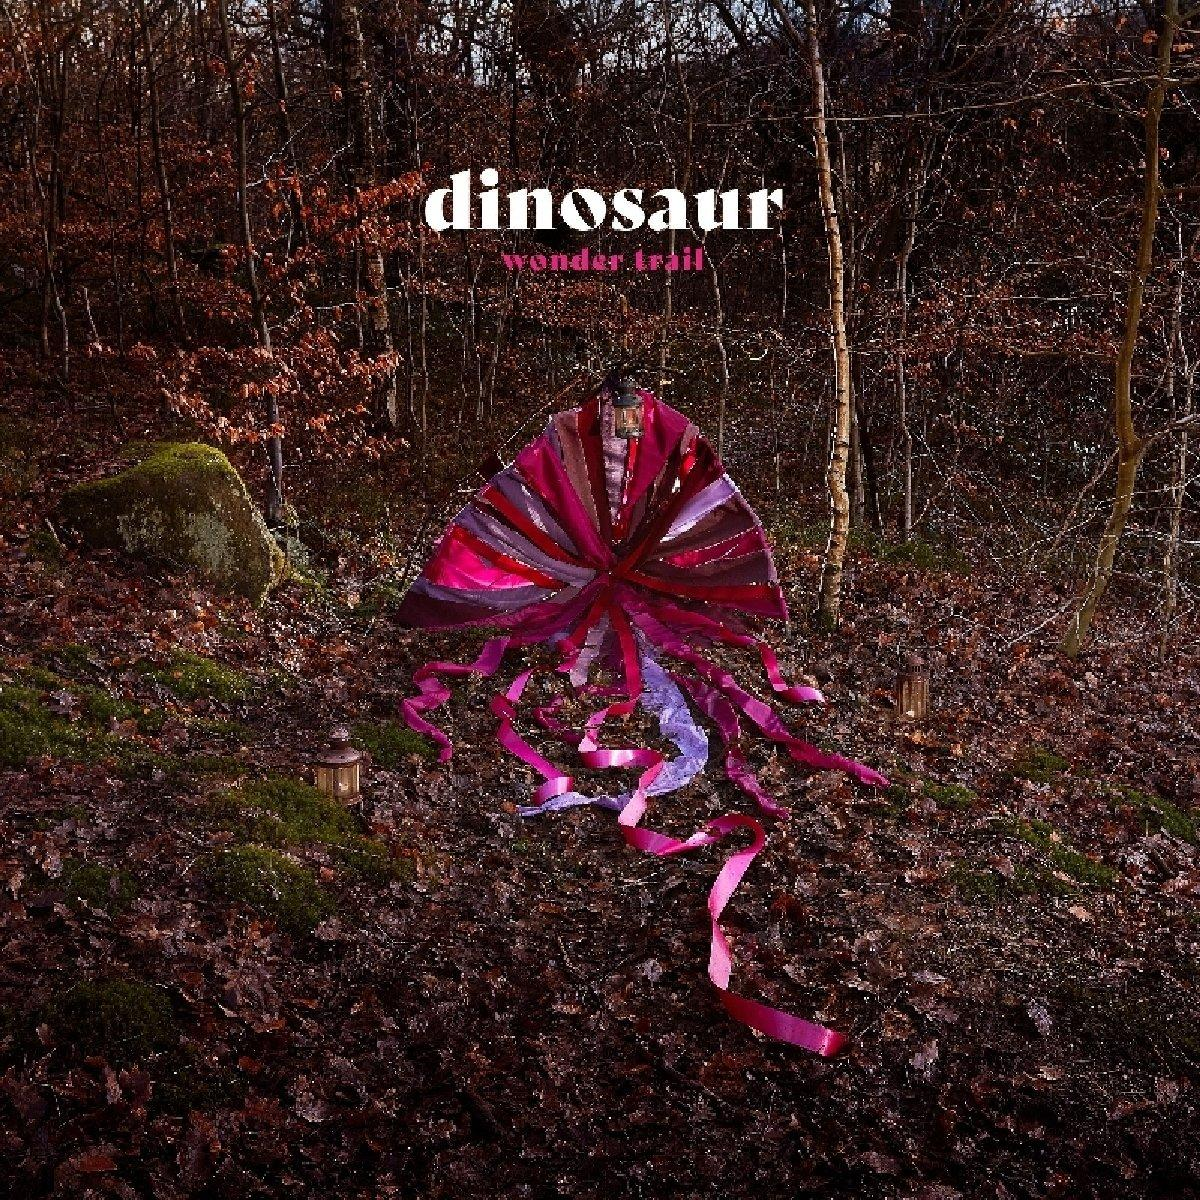 Dinosaur - (Vinyl) Wonder Jr. - Trail